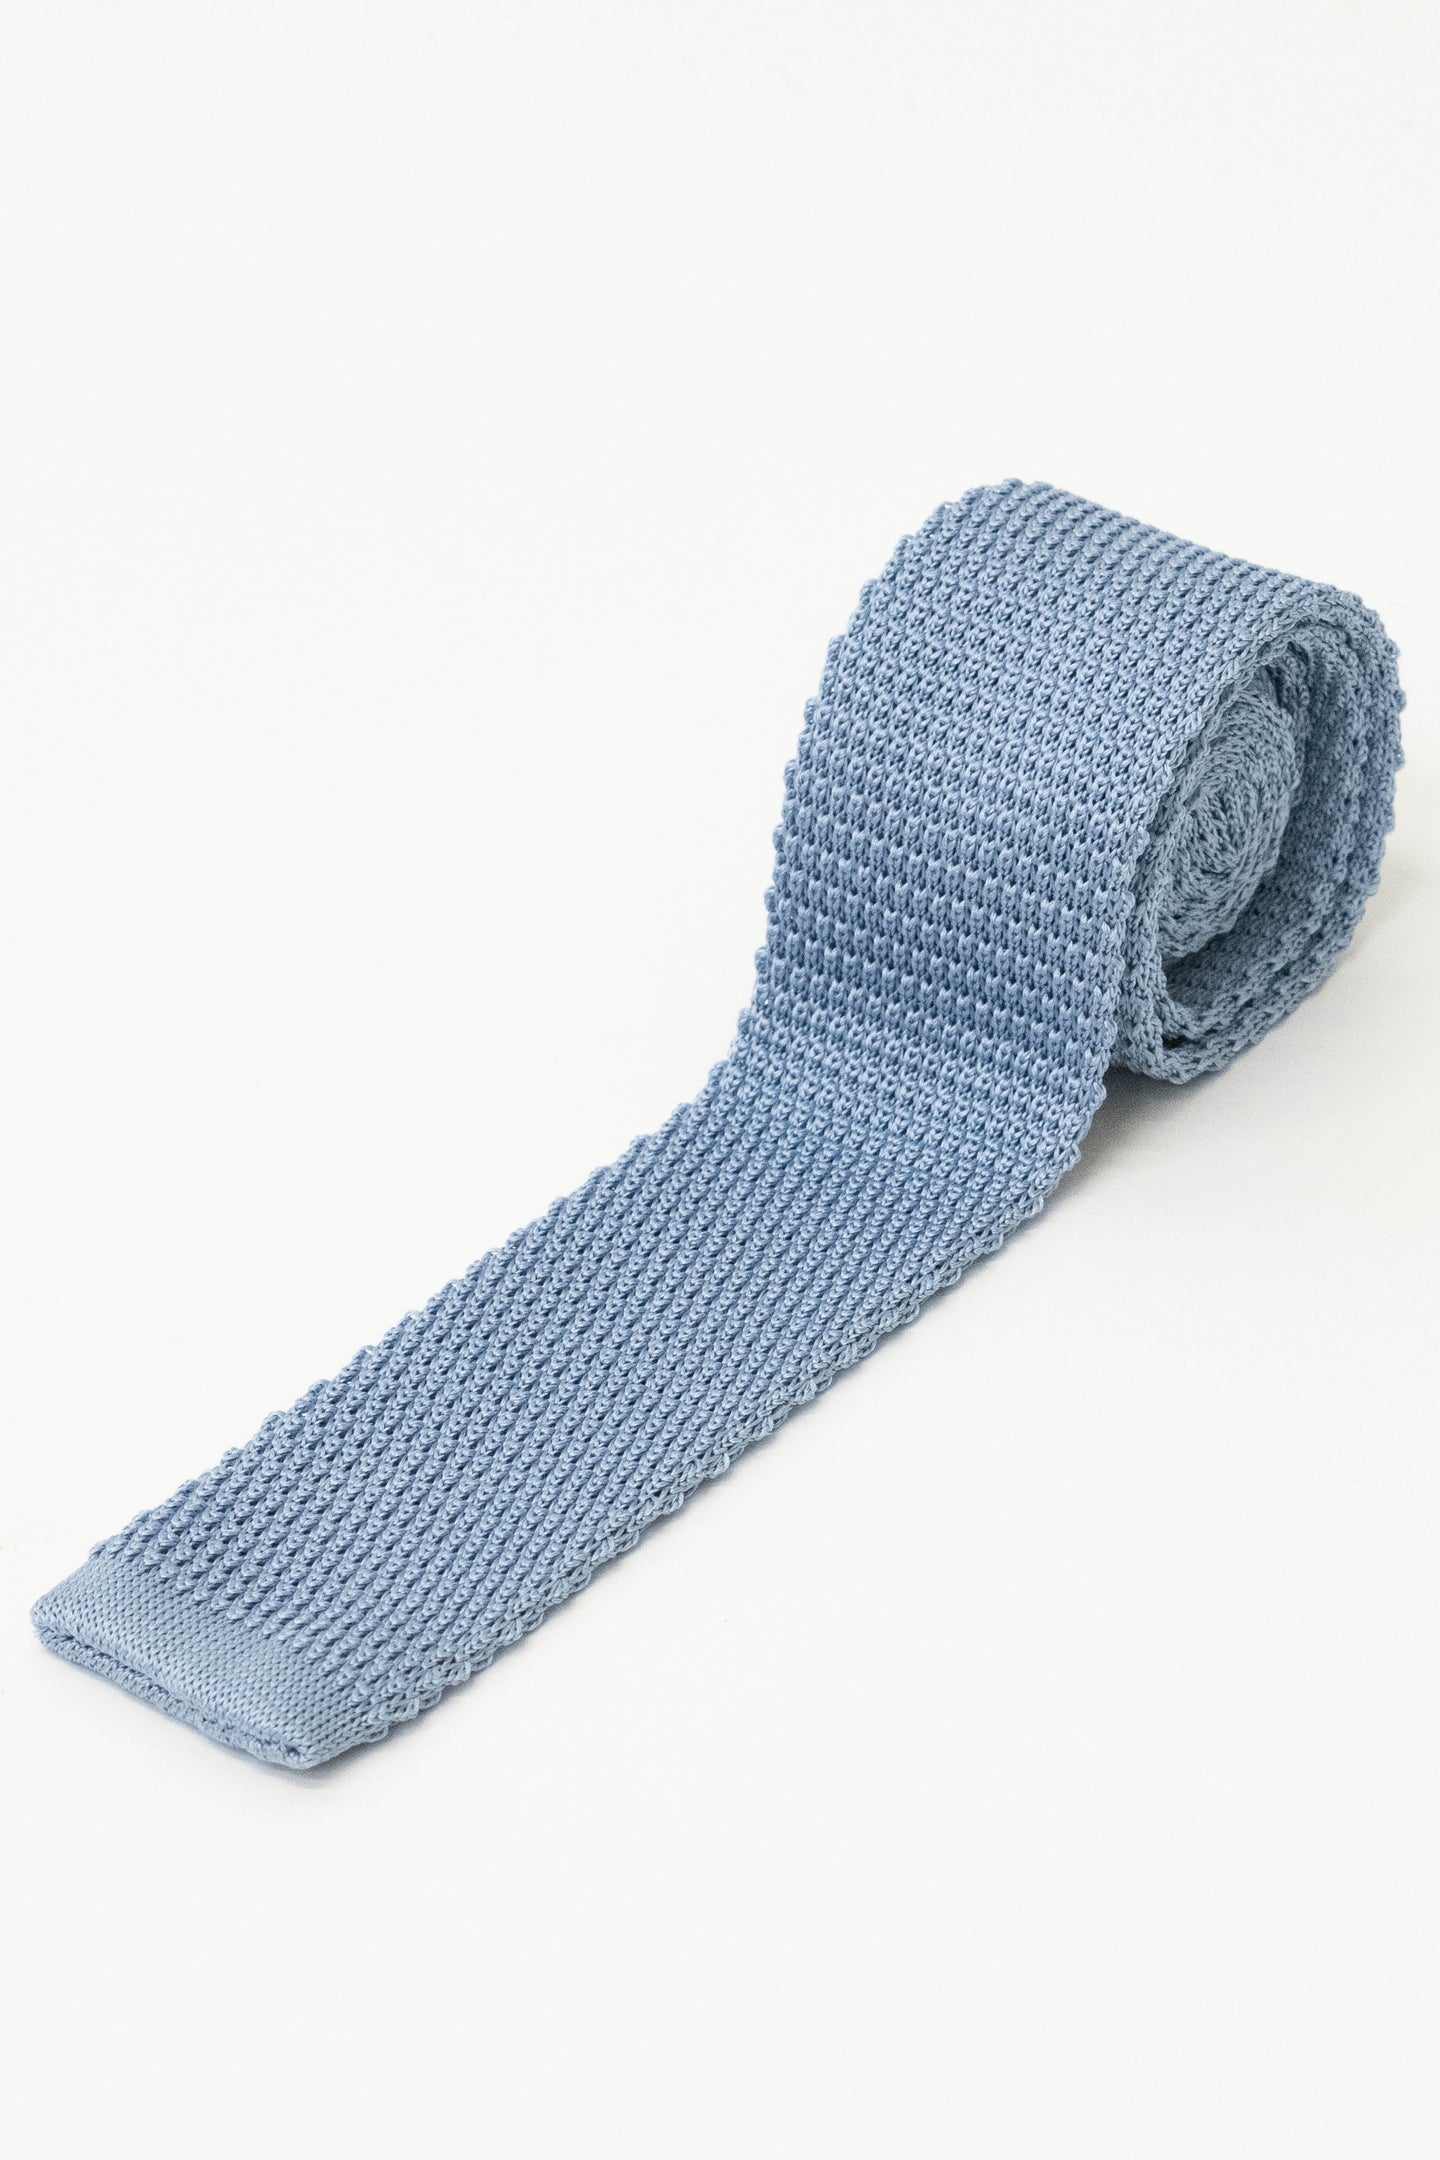 Knightsbridge Neckwear Plain Sky Blue Silk Knitted Tie